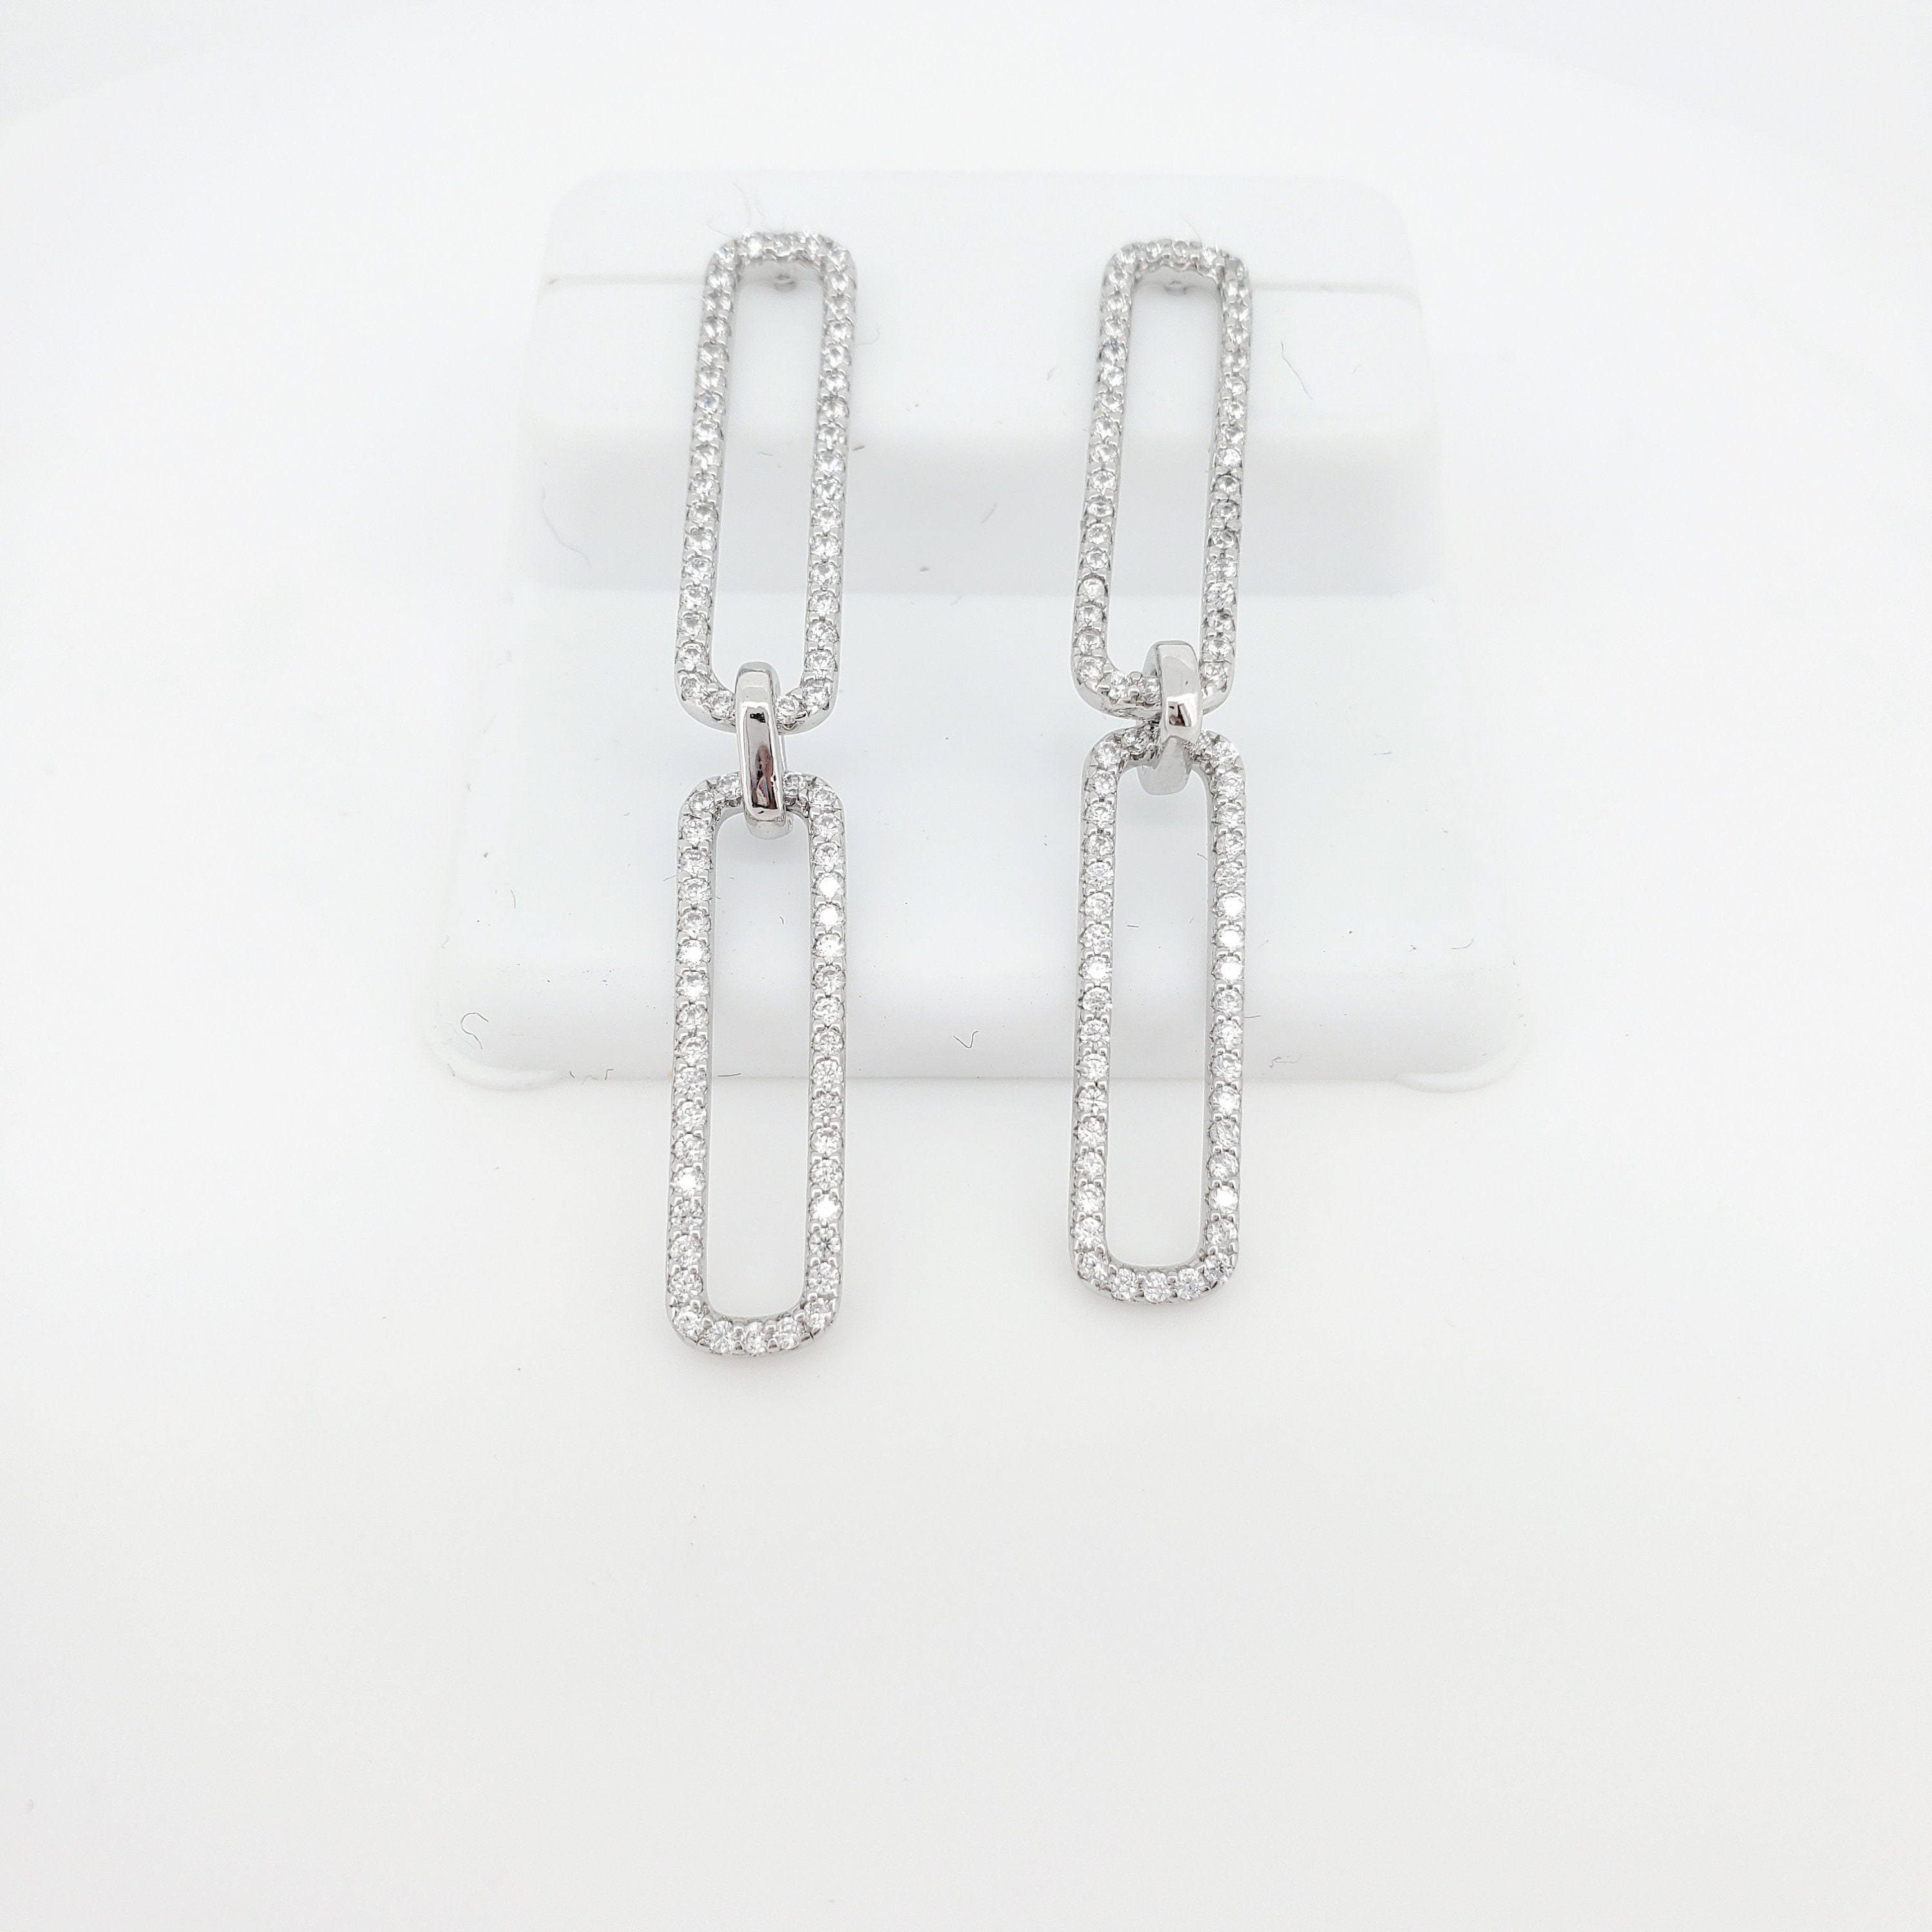 Paperclip Earrings, Chunky Earrings, Wire Dangle Earrings Stainless Steel  Drop Earrings Minimalist Earrings Art Gift for Her 1 Pair 